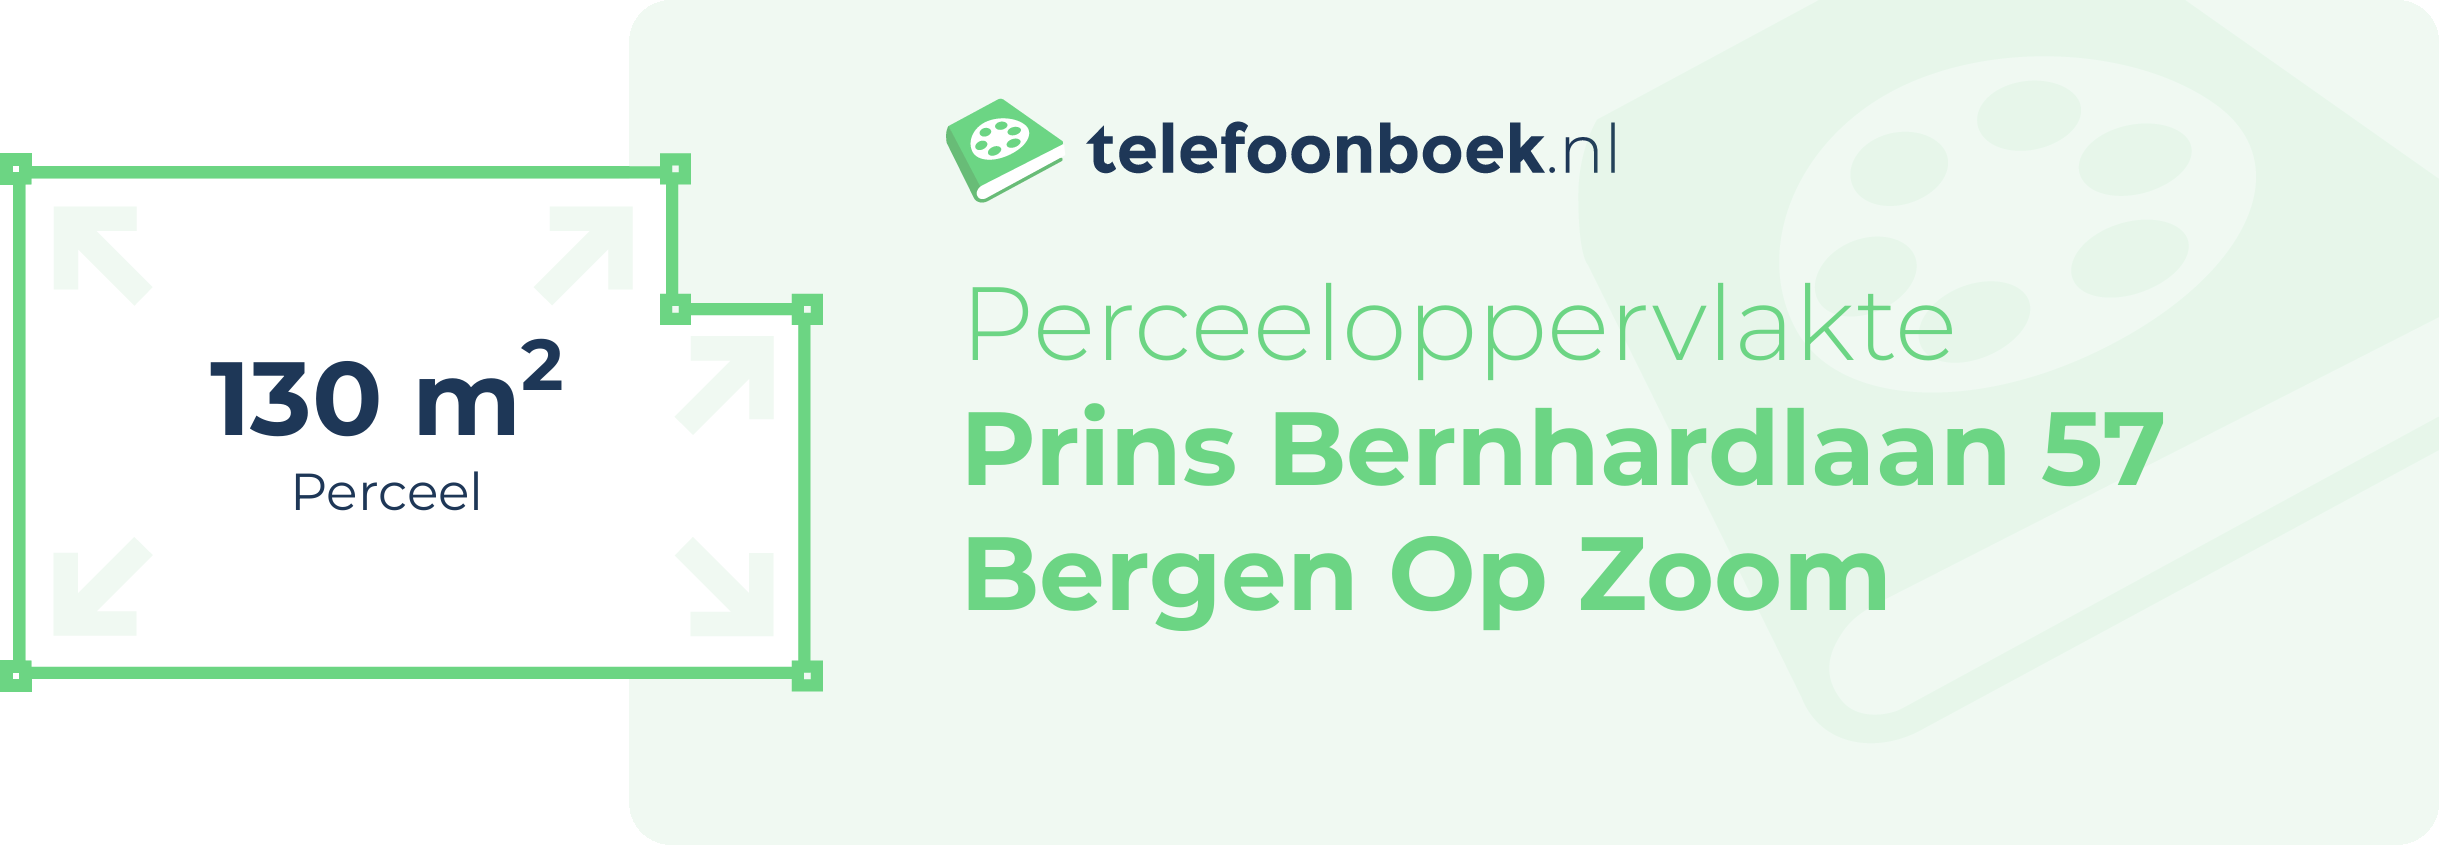 Perceeloppervlakte Prins Bernhardlaan 57 Bergen Op Zoom